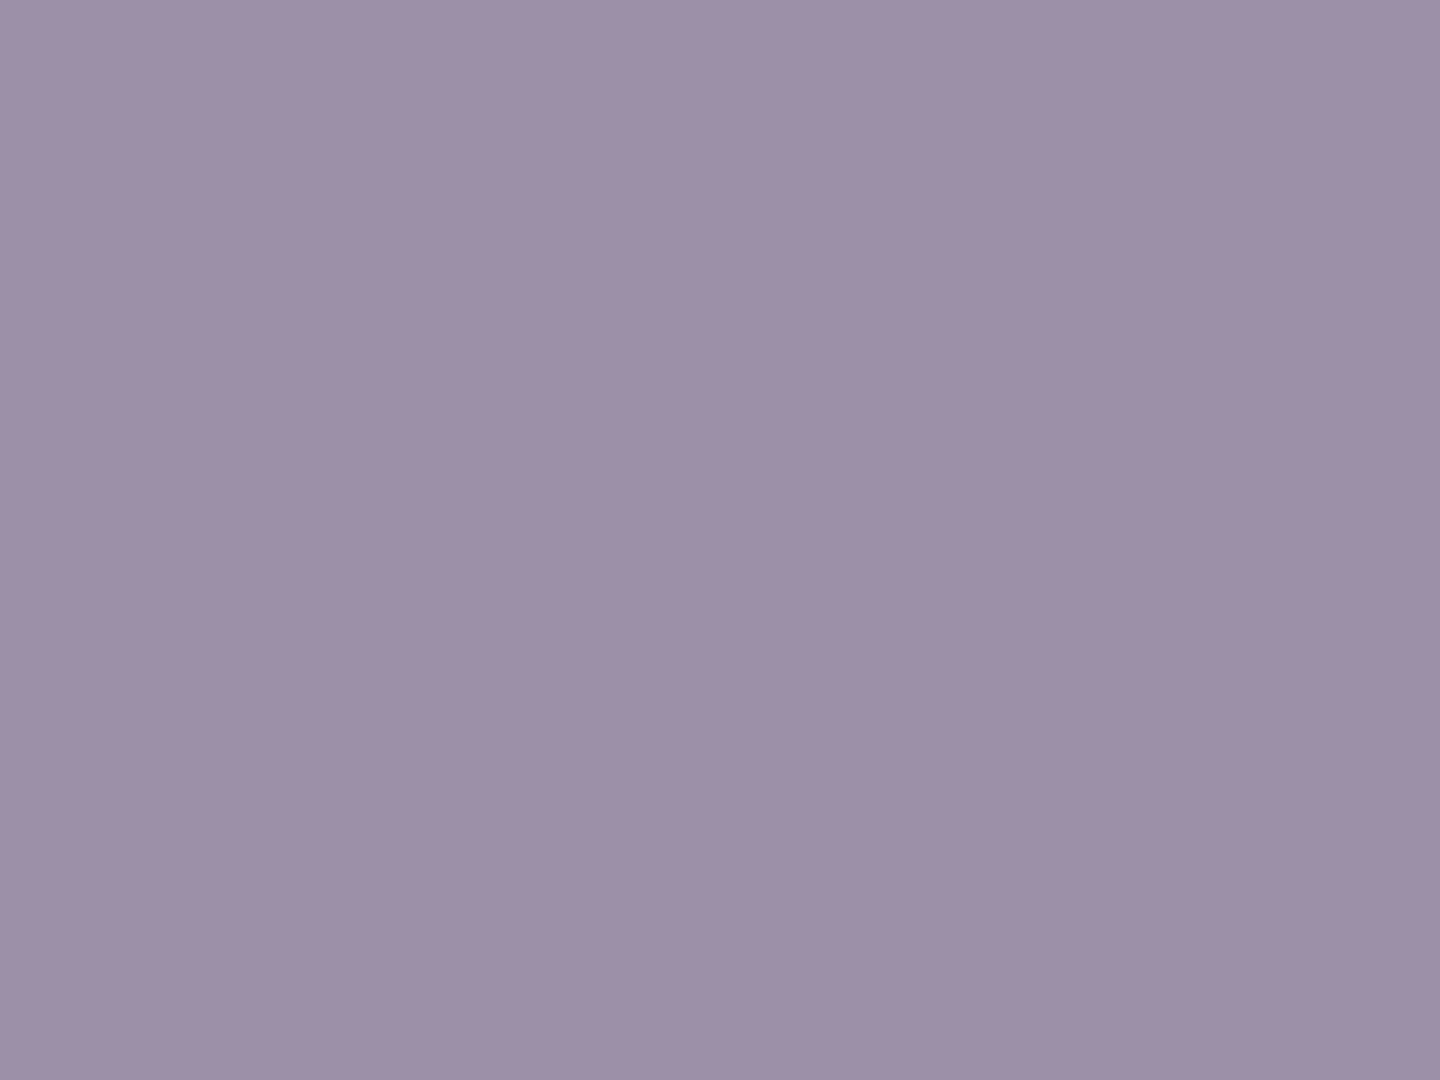 Bettwscheset Nejd Perkal - Dusty Lilac